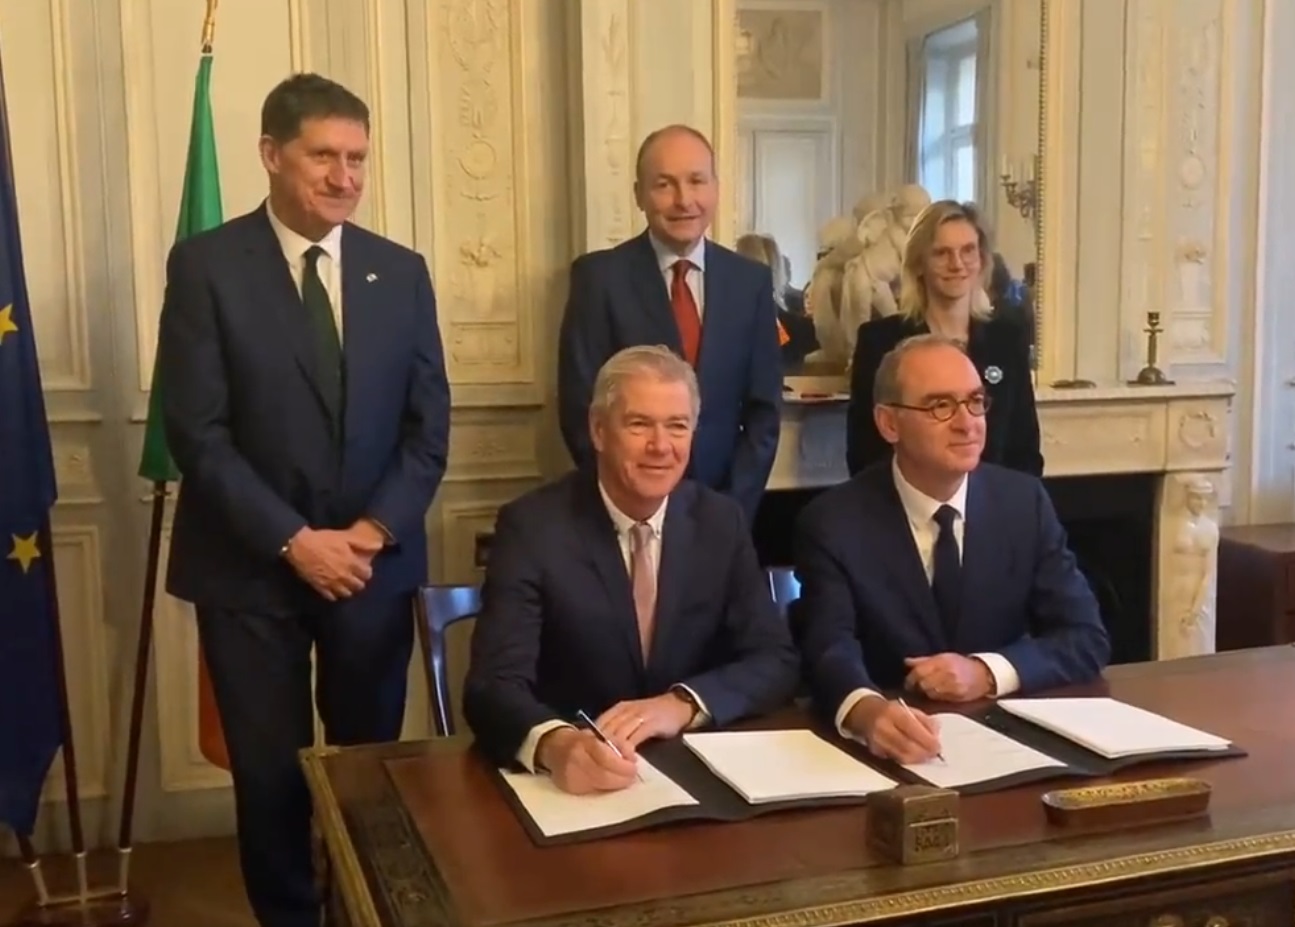 Francuska i Irska potpisale su sporazum o povezivanju dve zemlje podvodnim elektroenergetskim kablom!